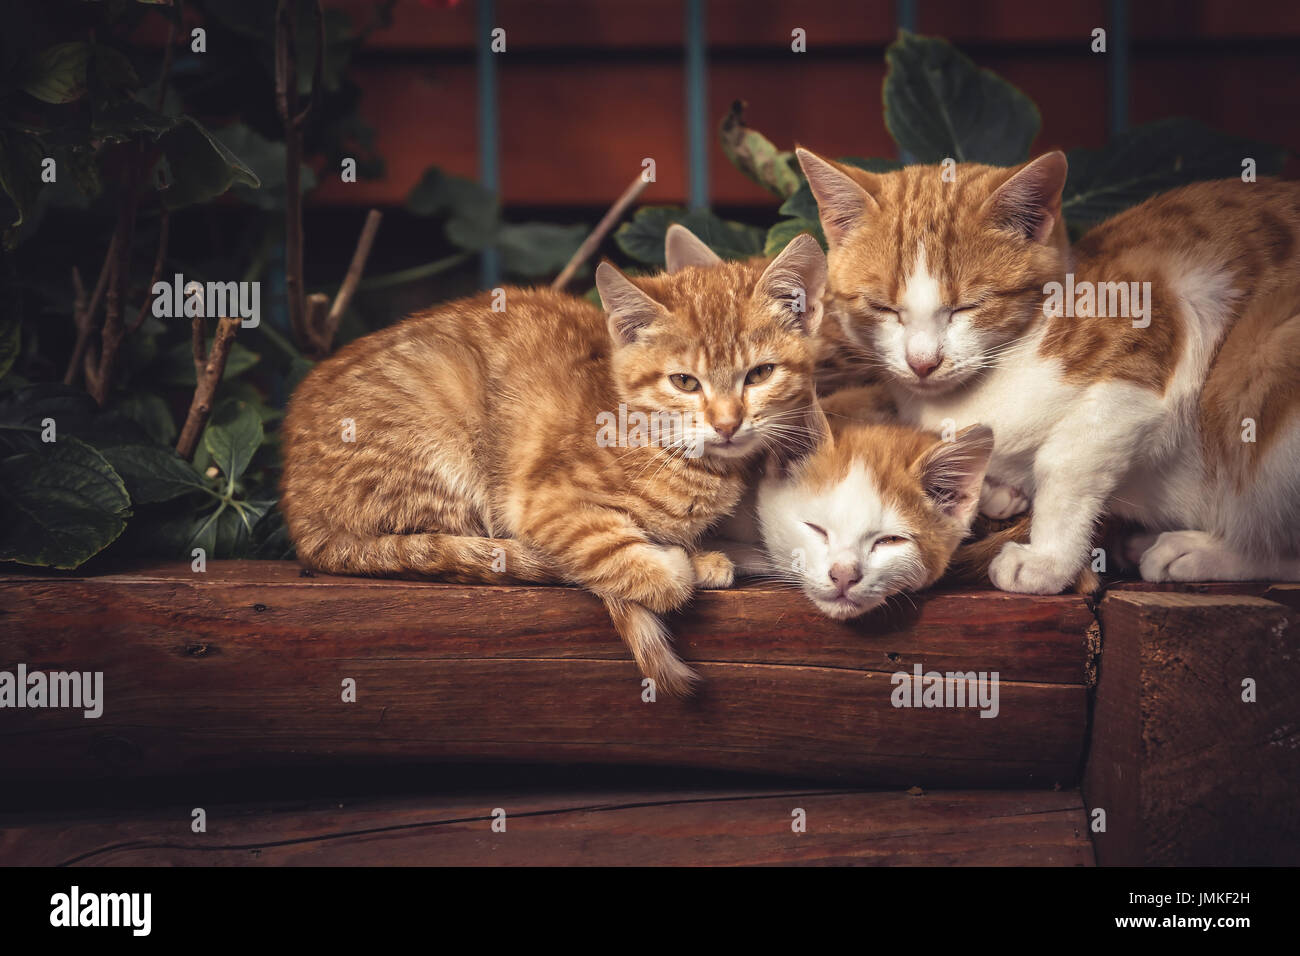 Carino gatti rossi famiglia insieme con il gattino in appoggio su tronchi di legno nelle zone rurali del paese di campagna nel vintage stile rustico Foto Stock